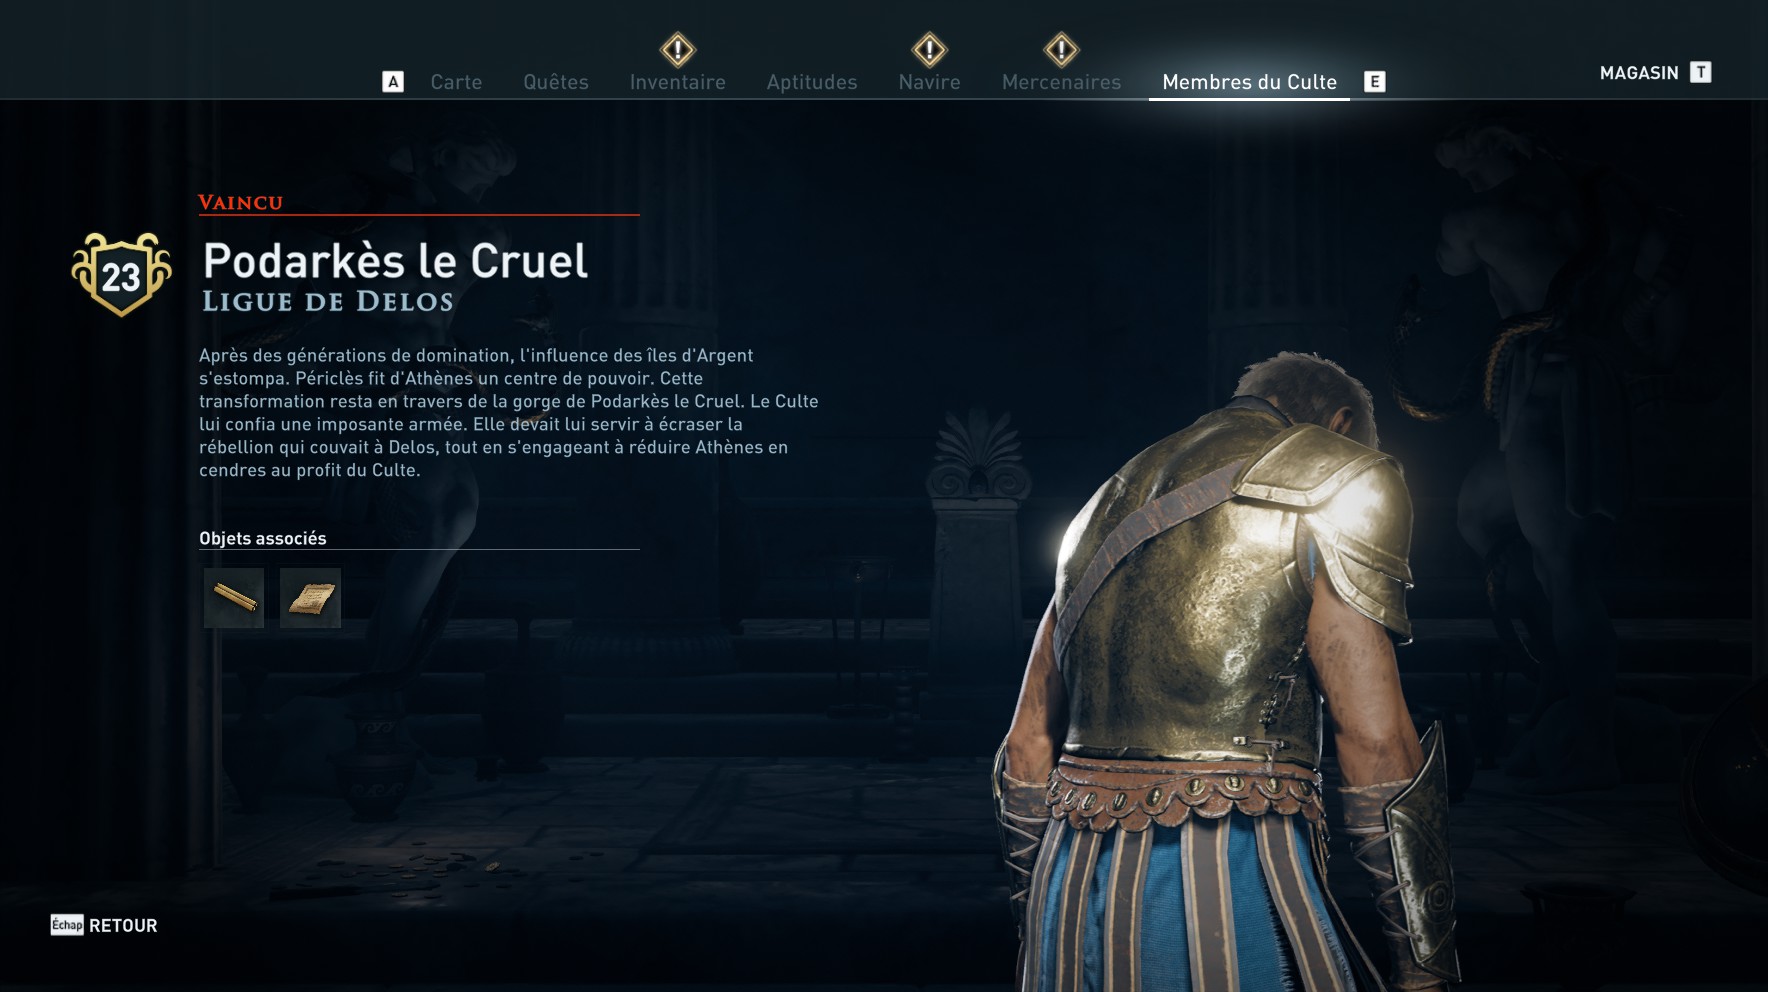 Assassin's Creed Odyssey trouver et tuer les adeptes du culte du Kosmos, ps4,, xbox one, pc, ubisoft, jeu vidéo, podarkes le cruel